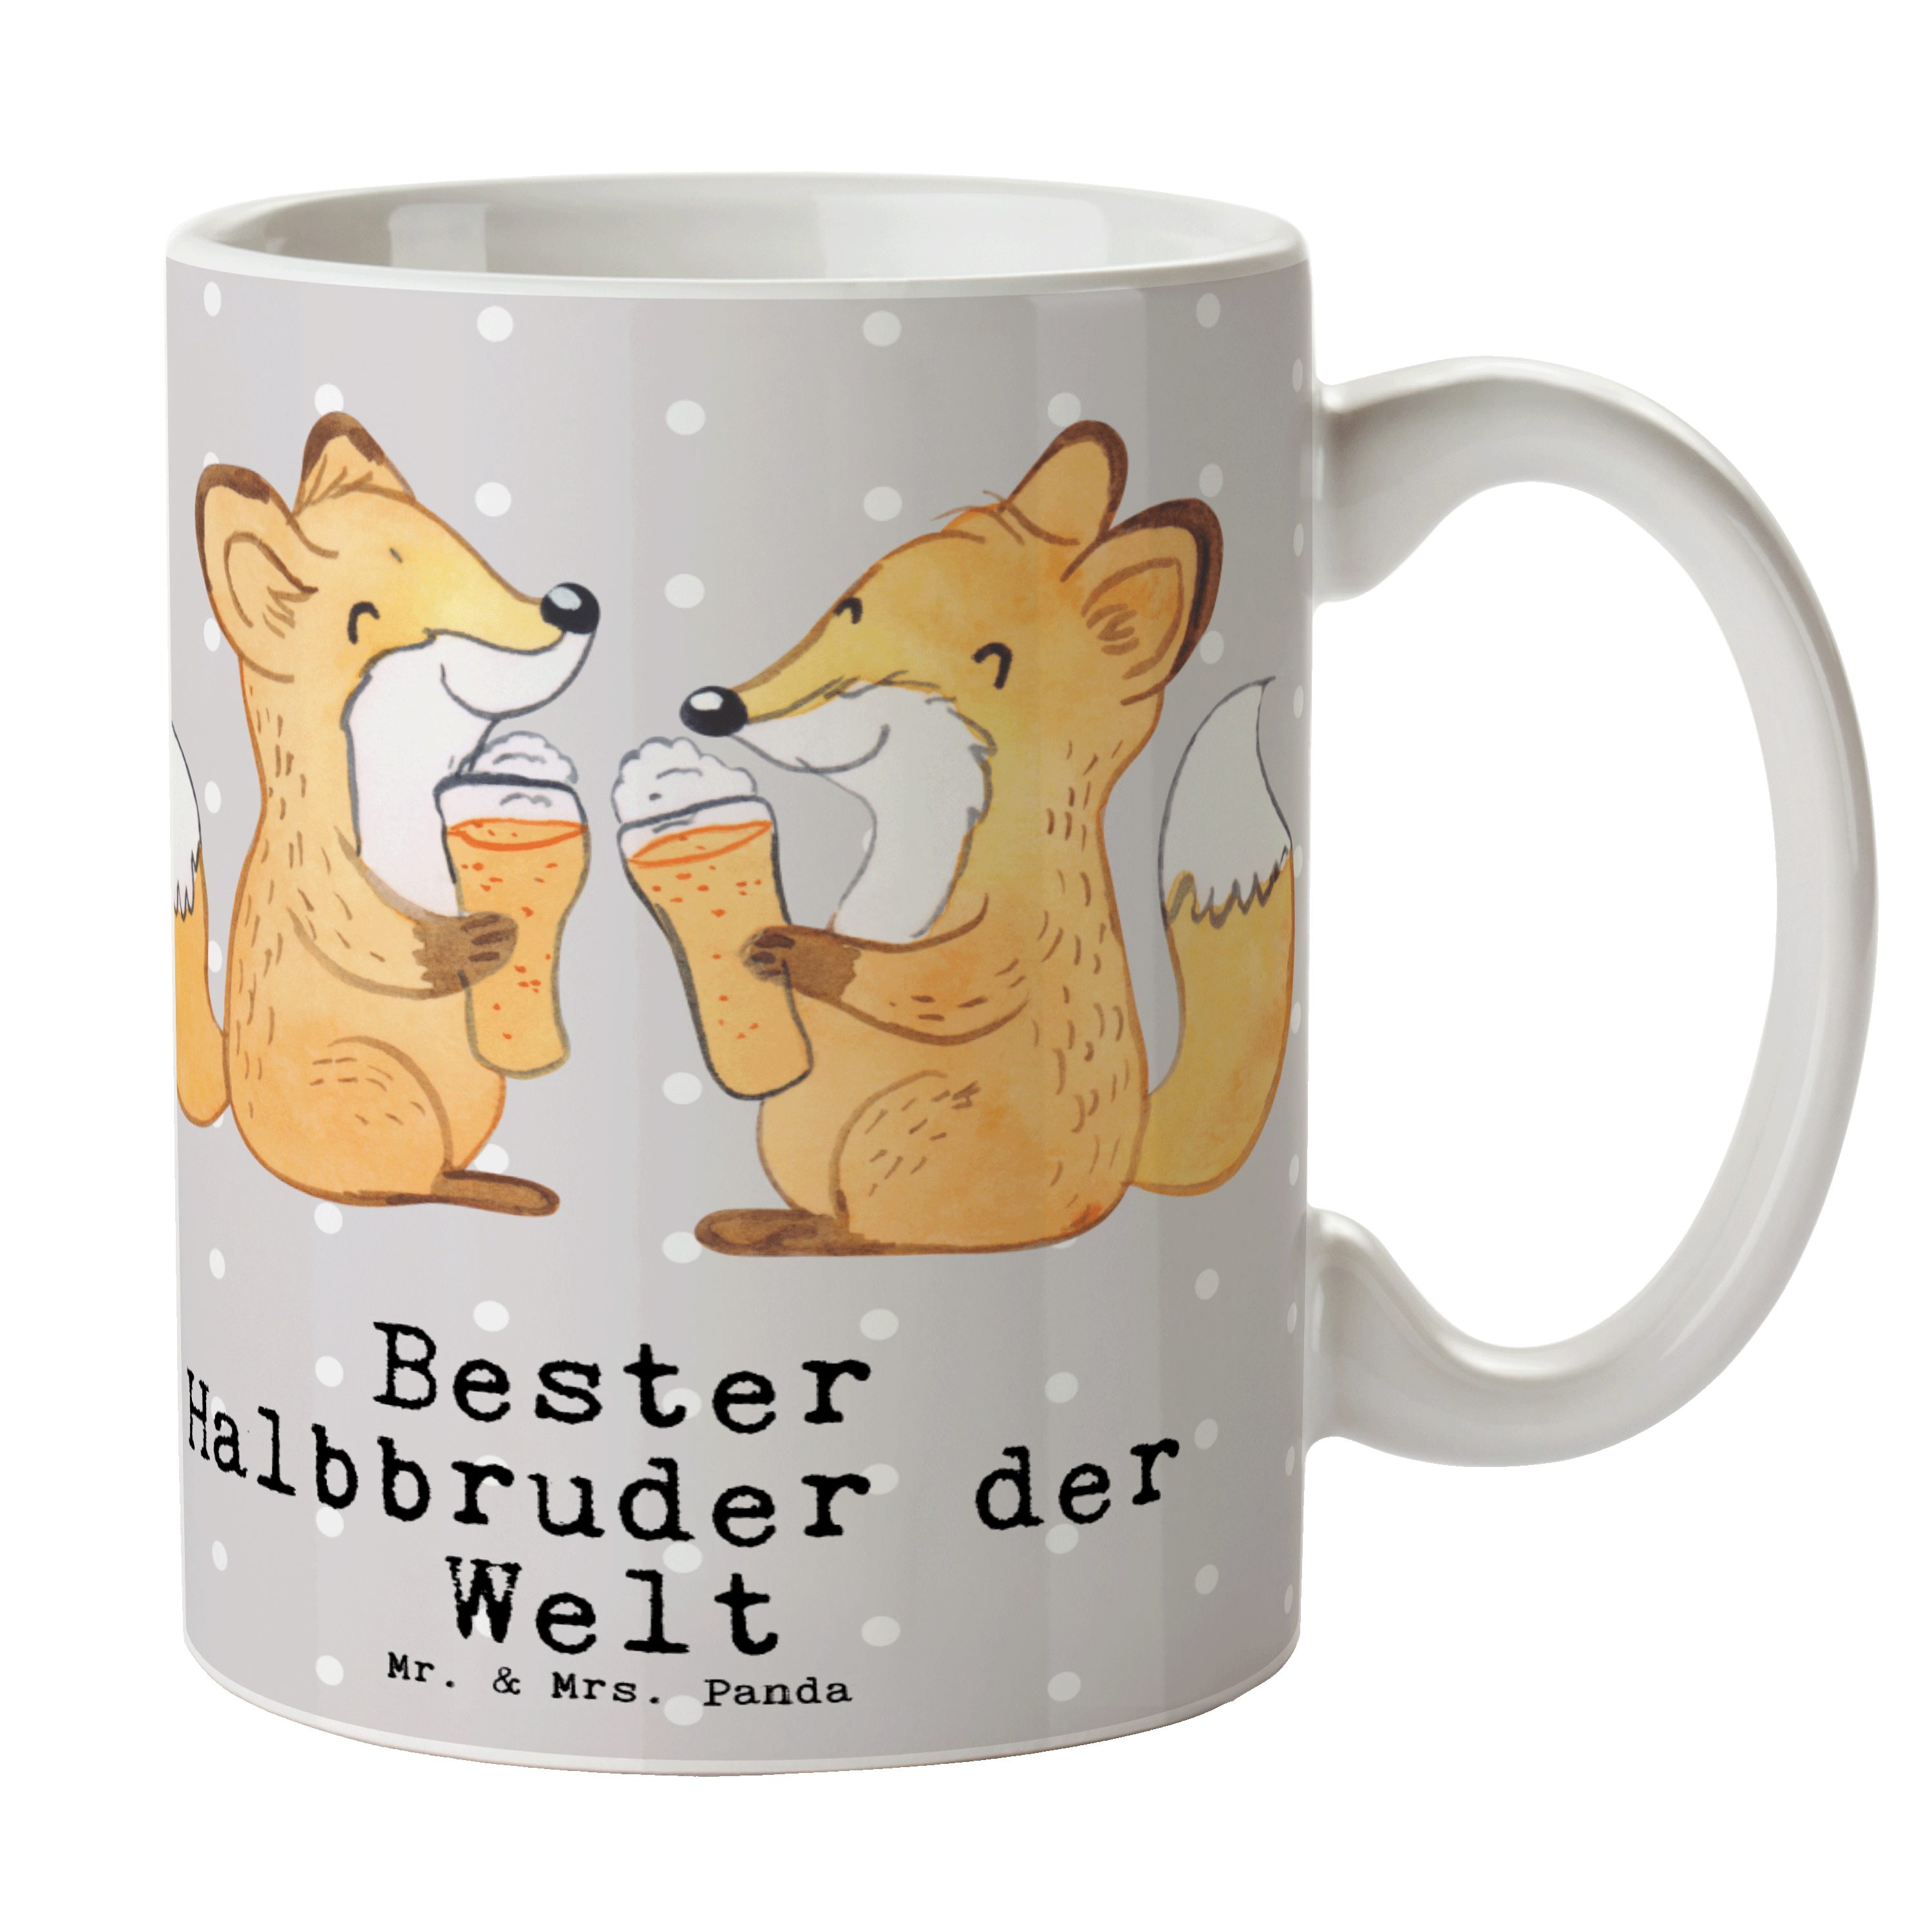 Mr. & Mrs. Panda Tasse Fuchs Bester Halbbruder der Welt - Grau Pastell - Geschenk, Brother, Keramik